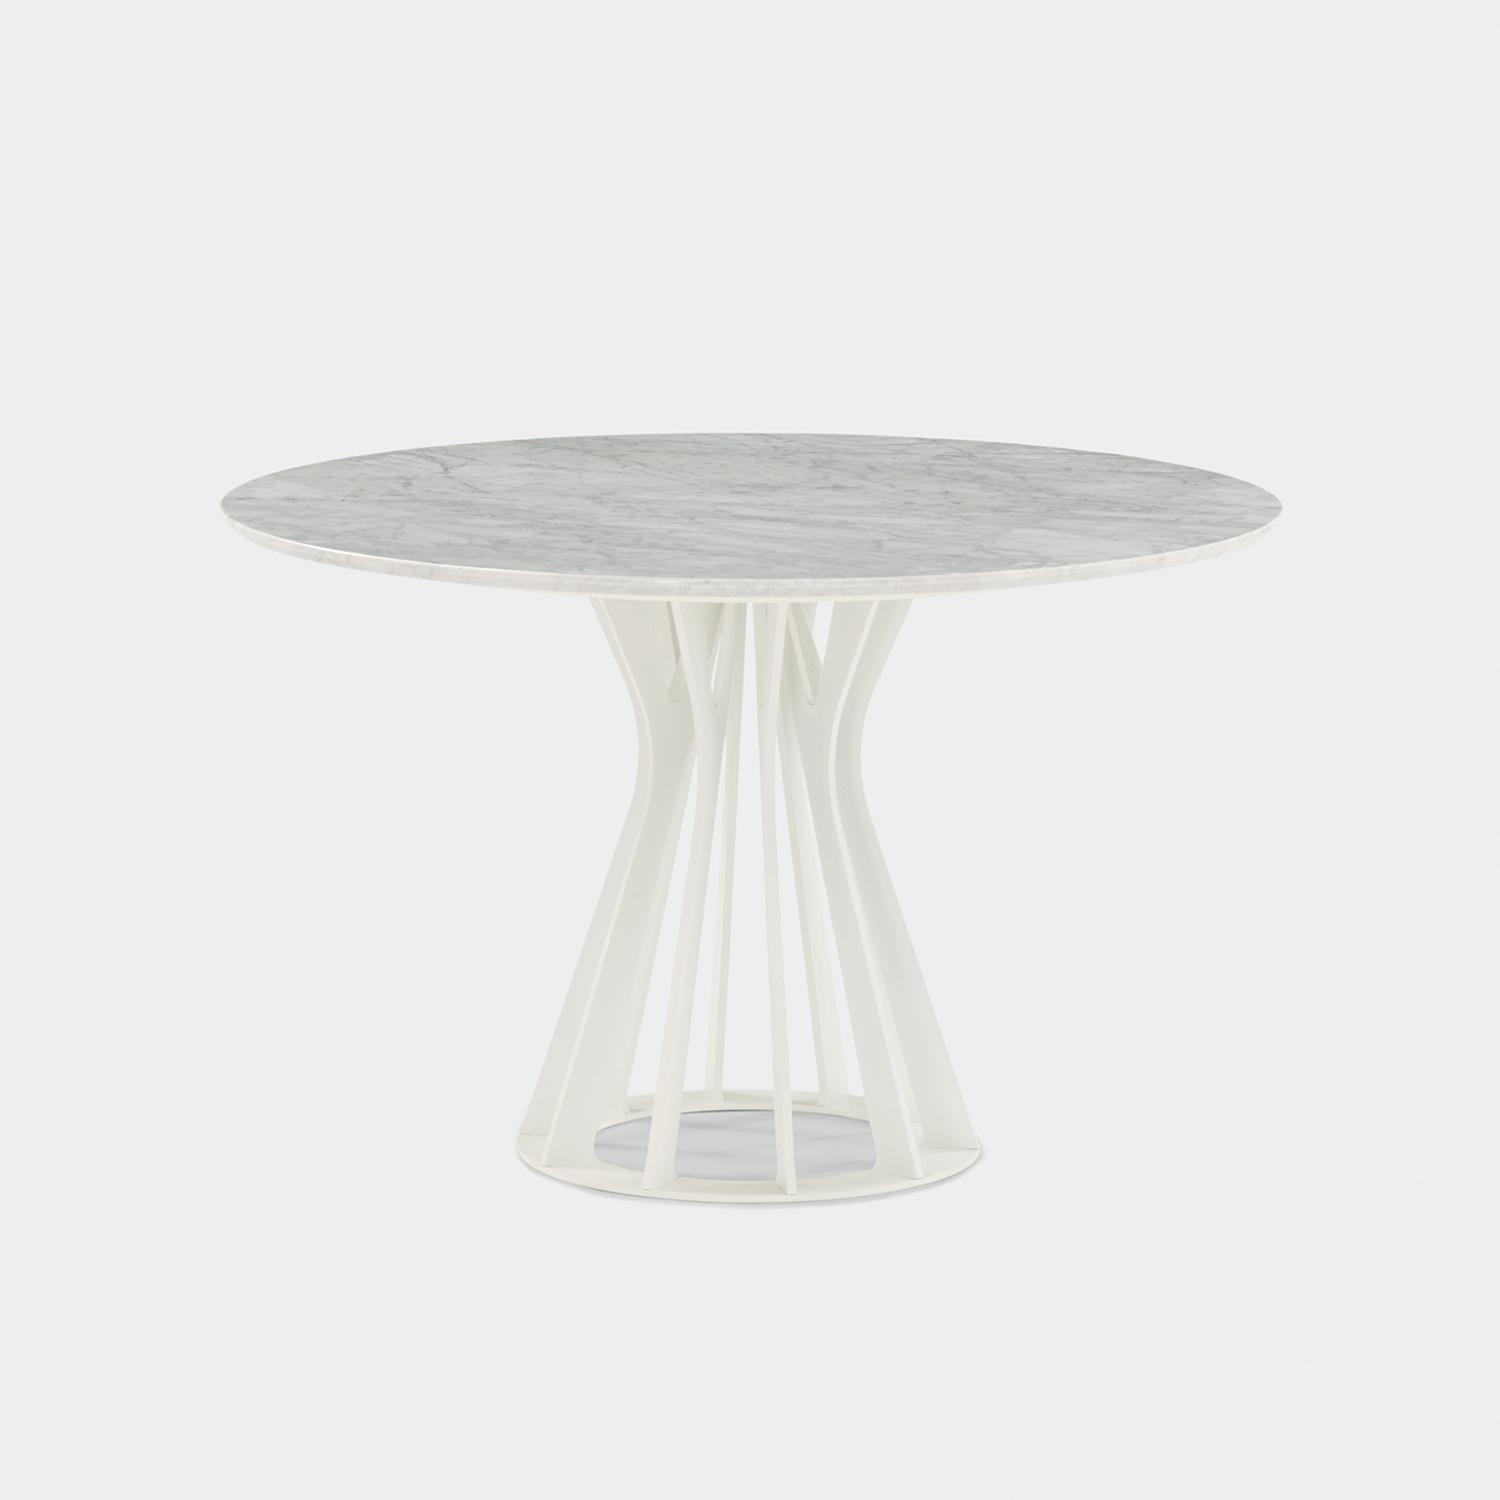 ダイニングテーブル「IM8500」円形 直径115cm 天然石 ホワイトカラーラ【フェア対象品 5%OFF】